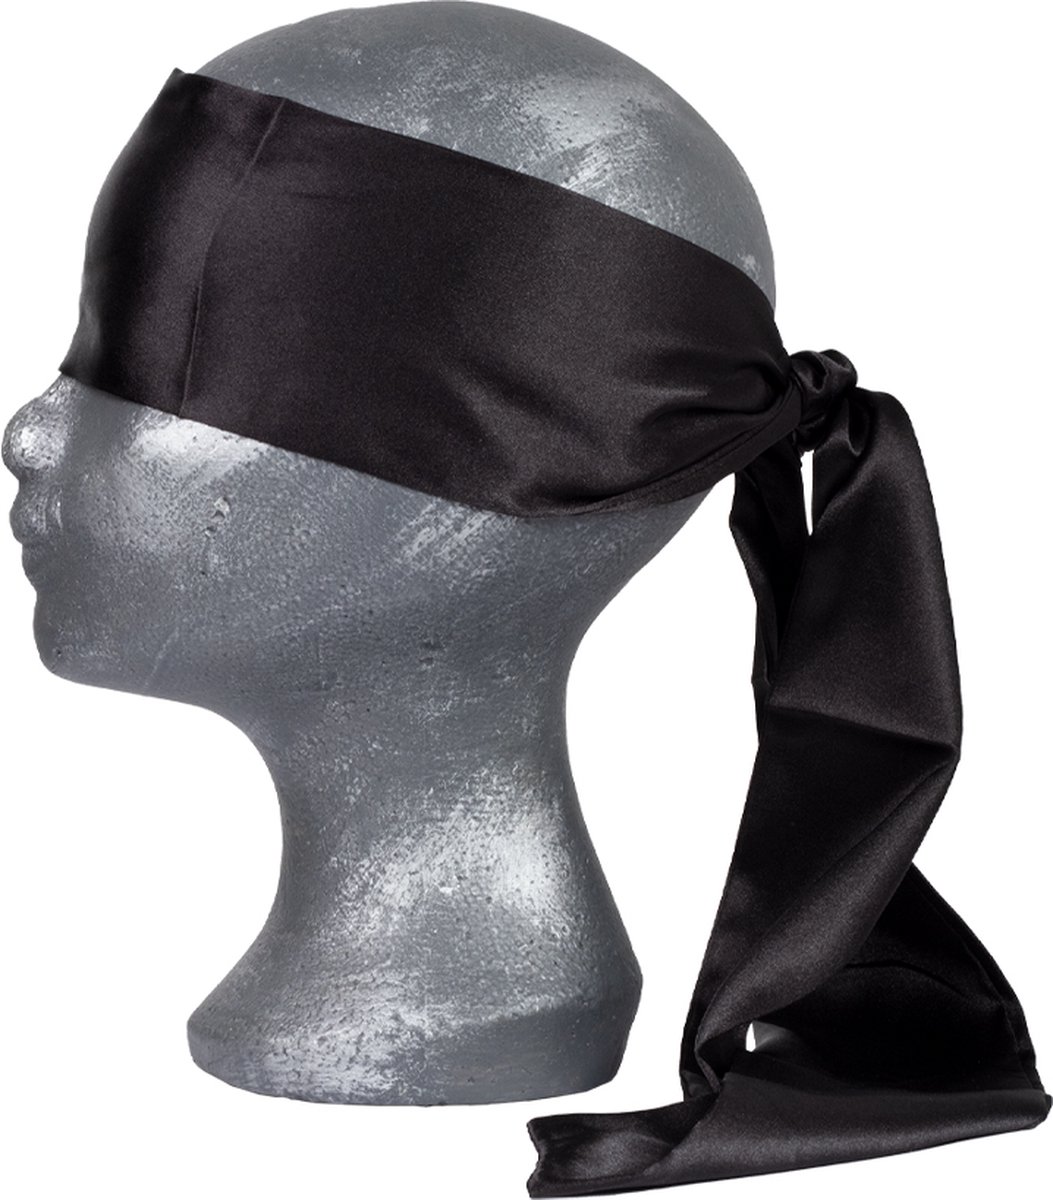 Rimba - Blindfold. 100% polyester